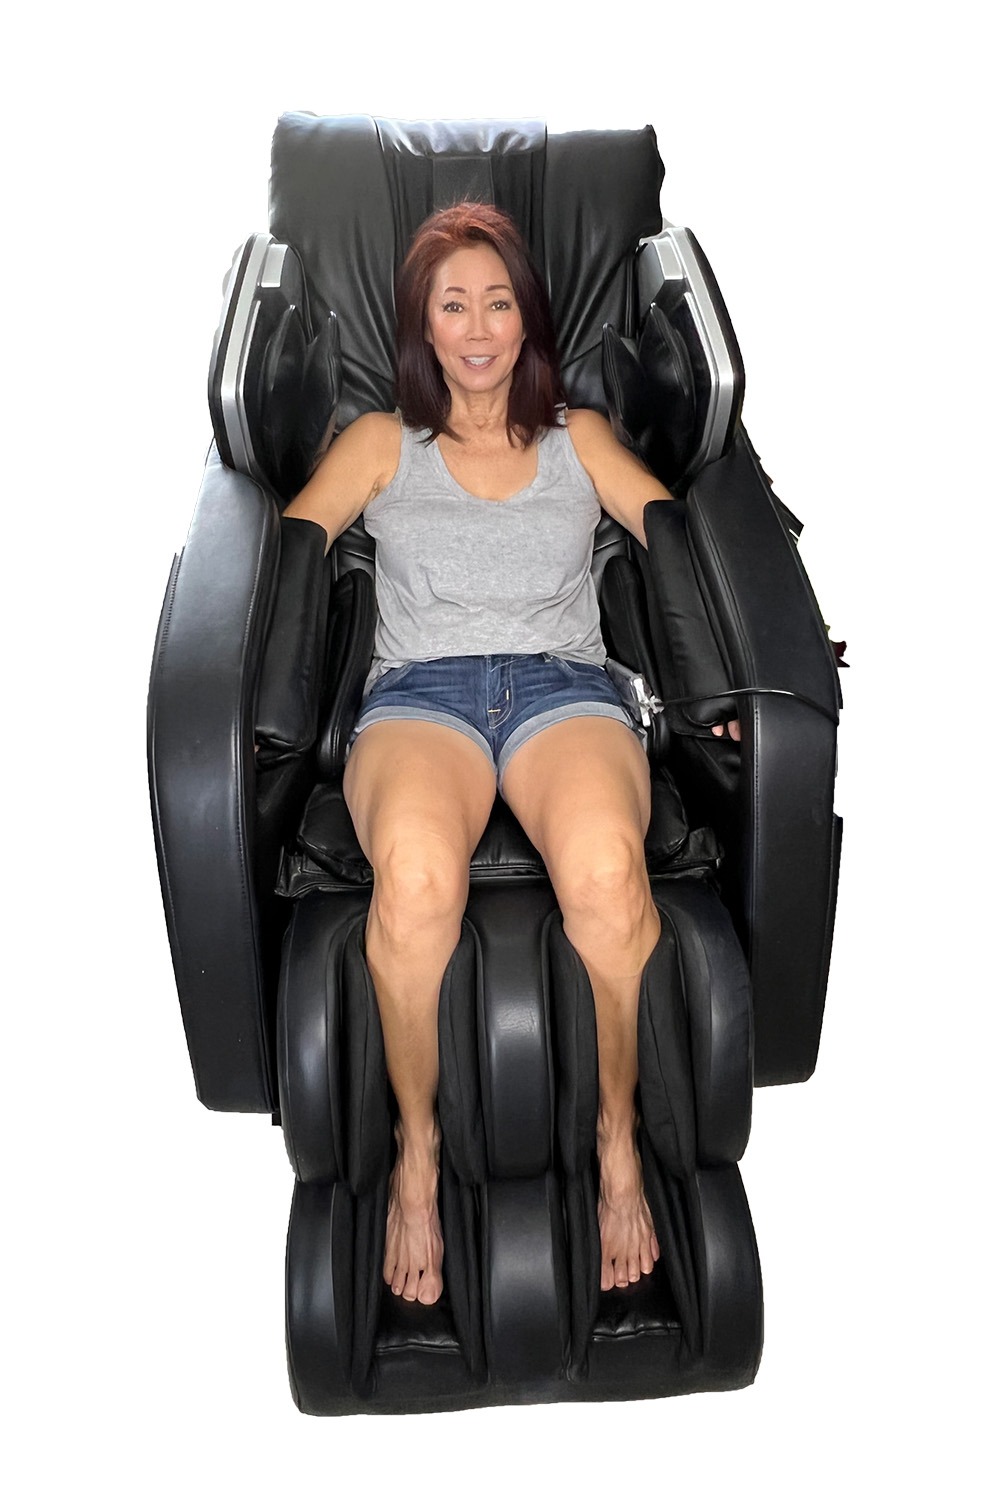 reclining massage chair